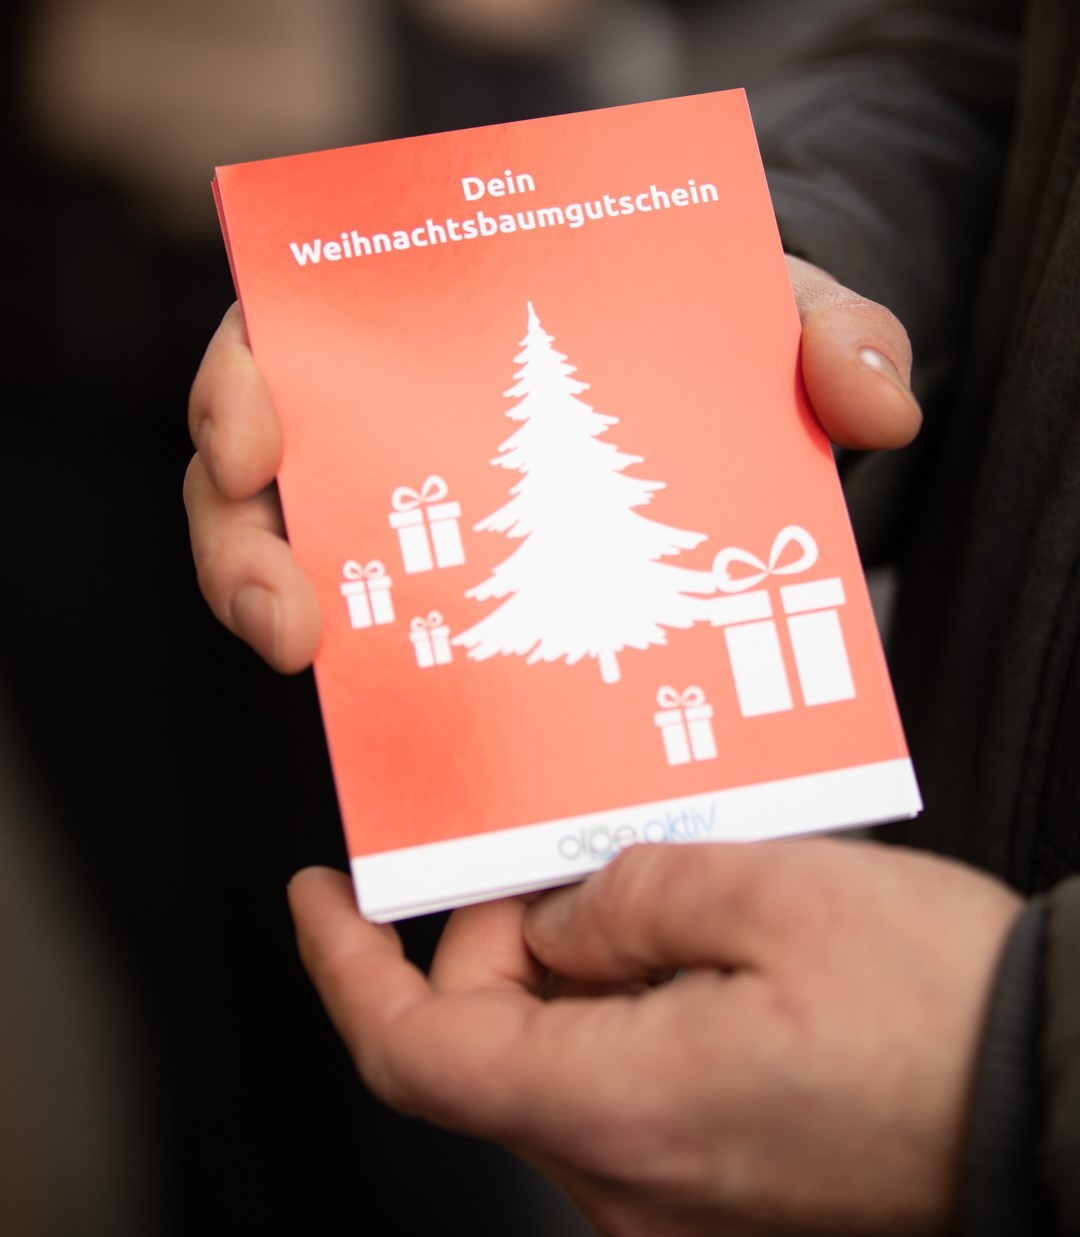 Wer in den teilnehmenden Geschäften für 200 Euro einkauft, erhält einen Gratisgutrschein für einen Weihnachtsbaum. von Olpe Aktiv